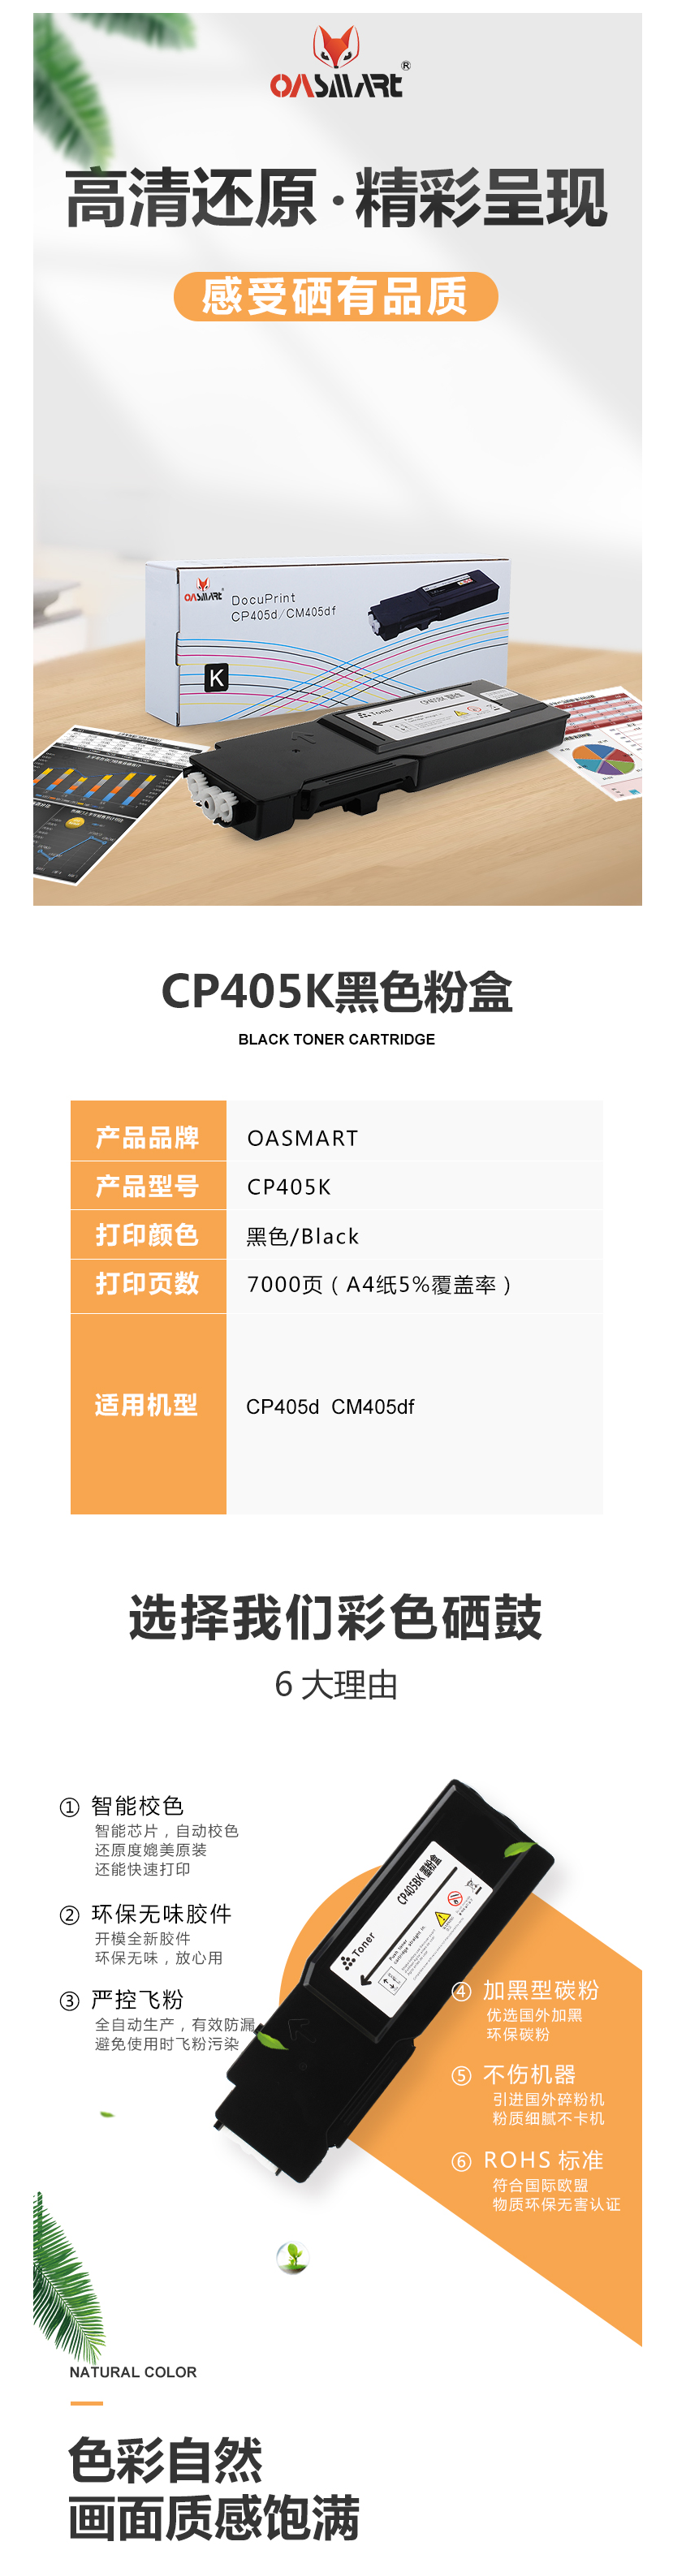 FireShot Capture 424 - 【OASMARTCP405K】OASMART（欧司特）CP405 K 黑_ - https___item.jd.com_100009293595.html.png